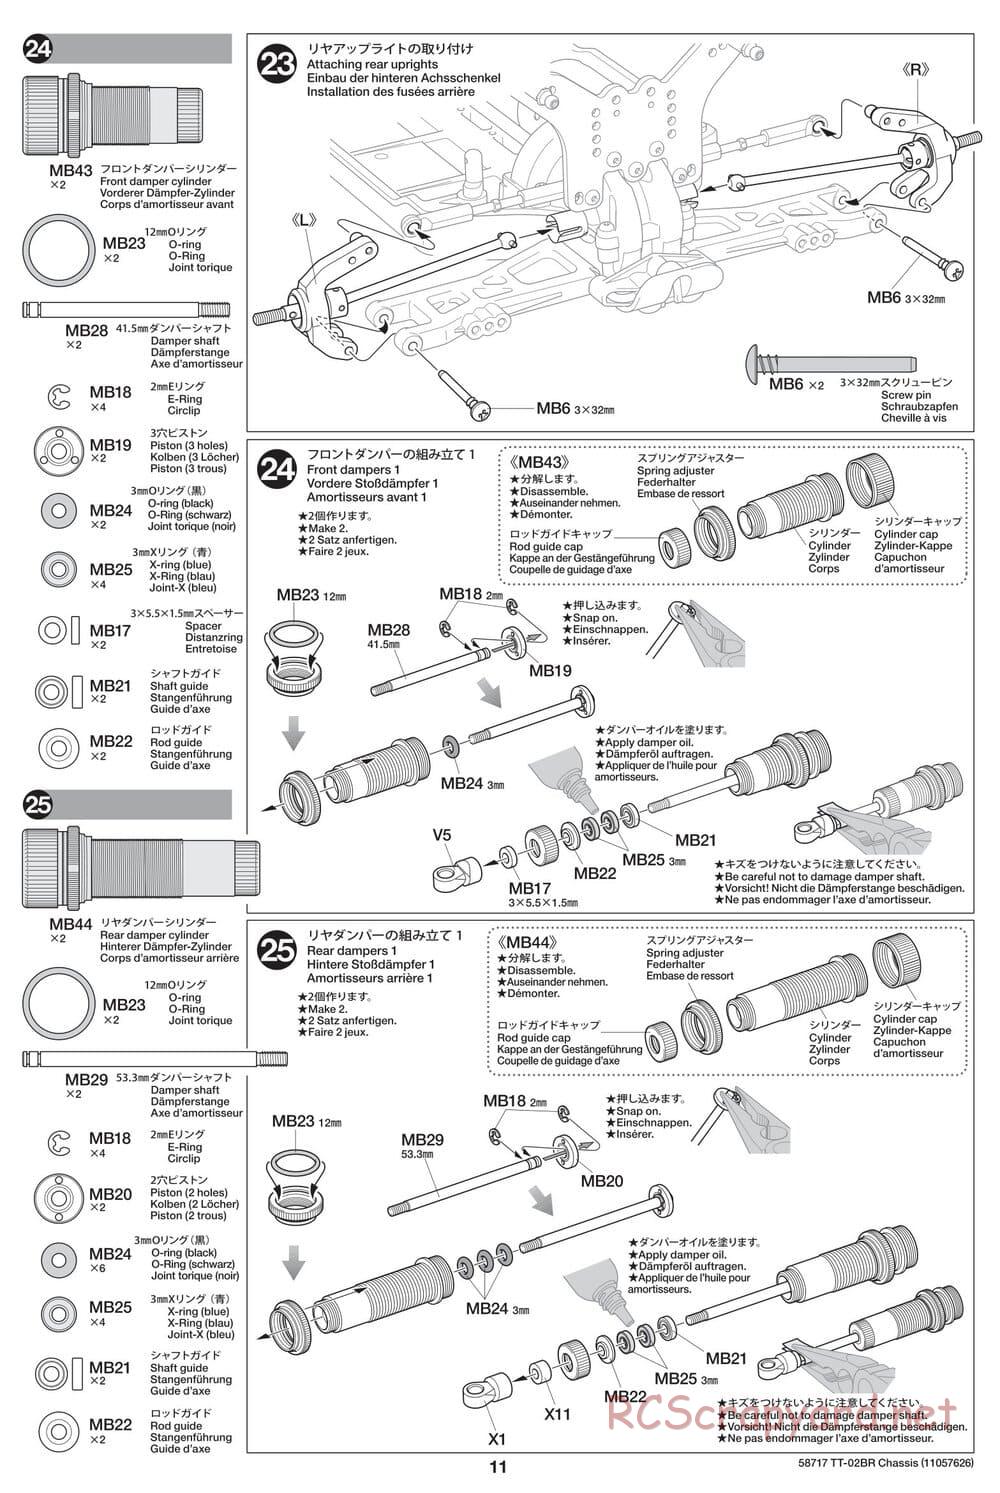 Tamiya - TT-02BR Chassis - Manual - Page 11